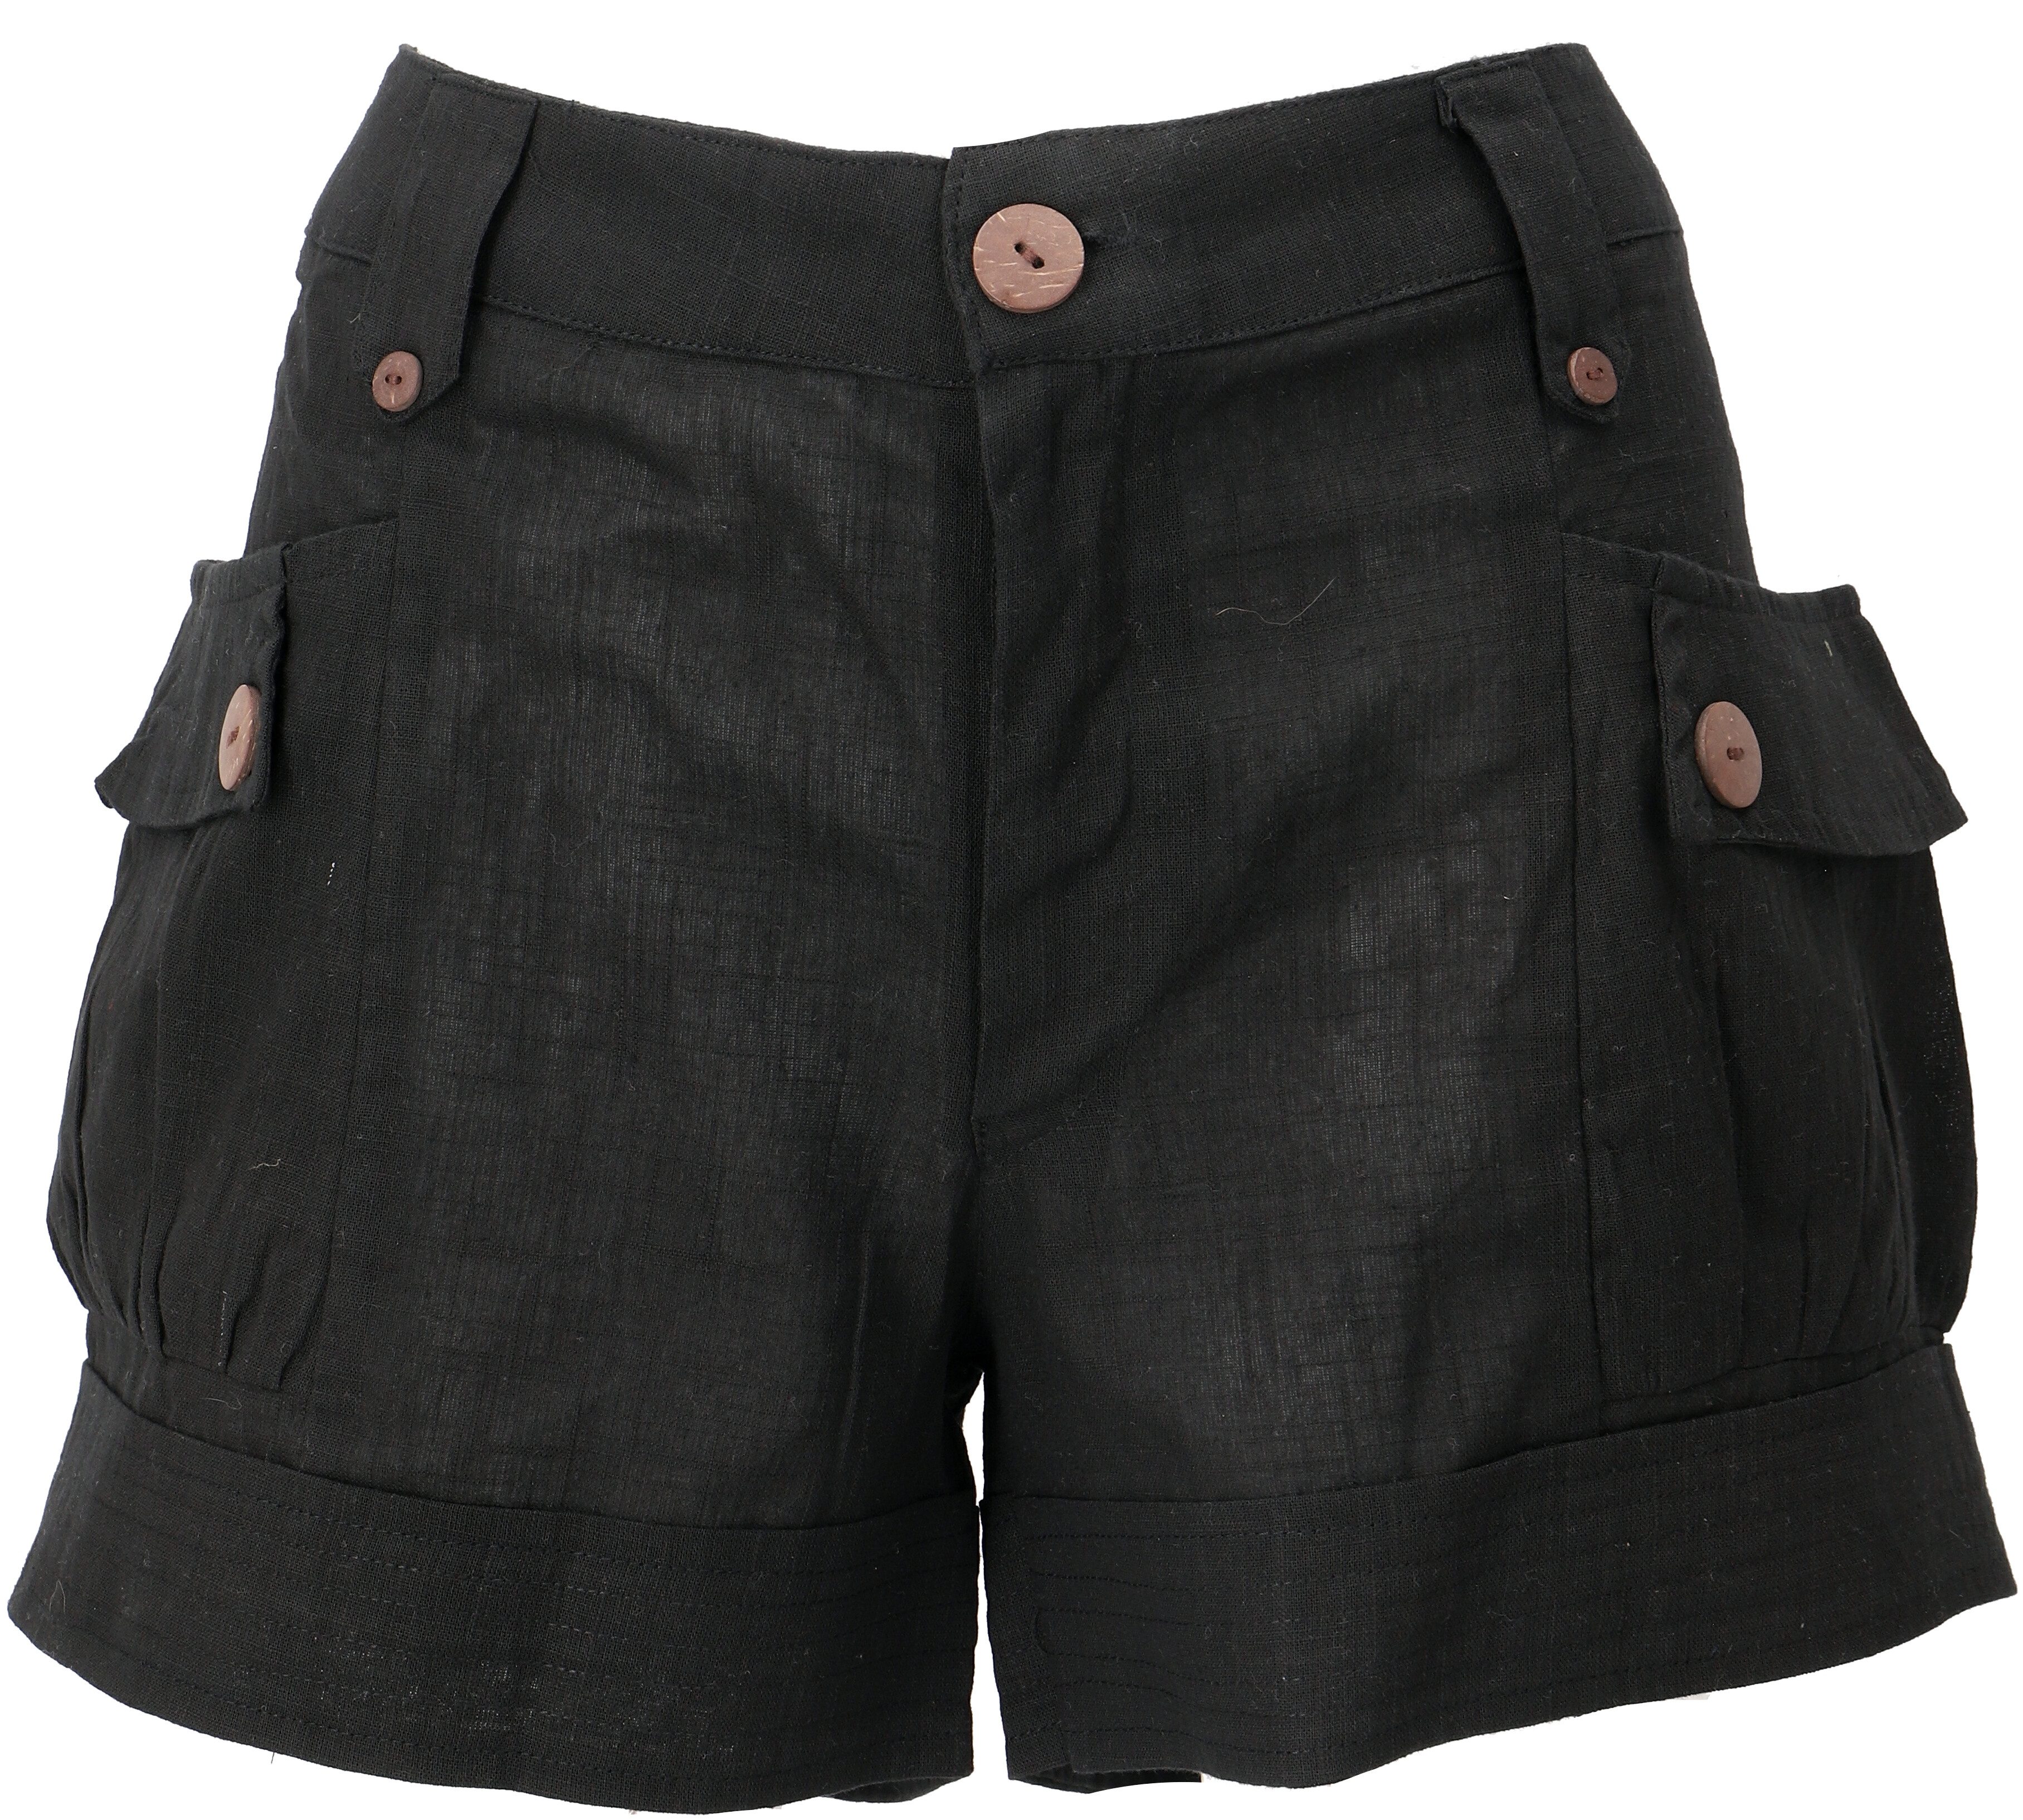 Guru-Shop Hose & Shorts Shorts Boho-chic, kurze Hose Leinenlook - schwarz alternative Bekleidung